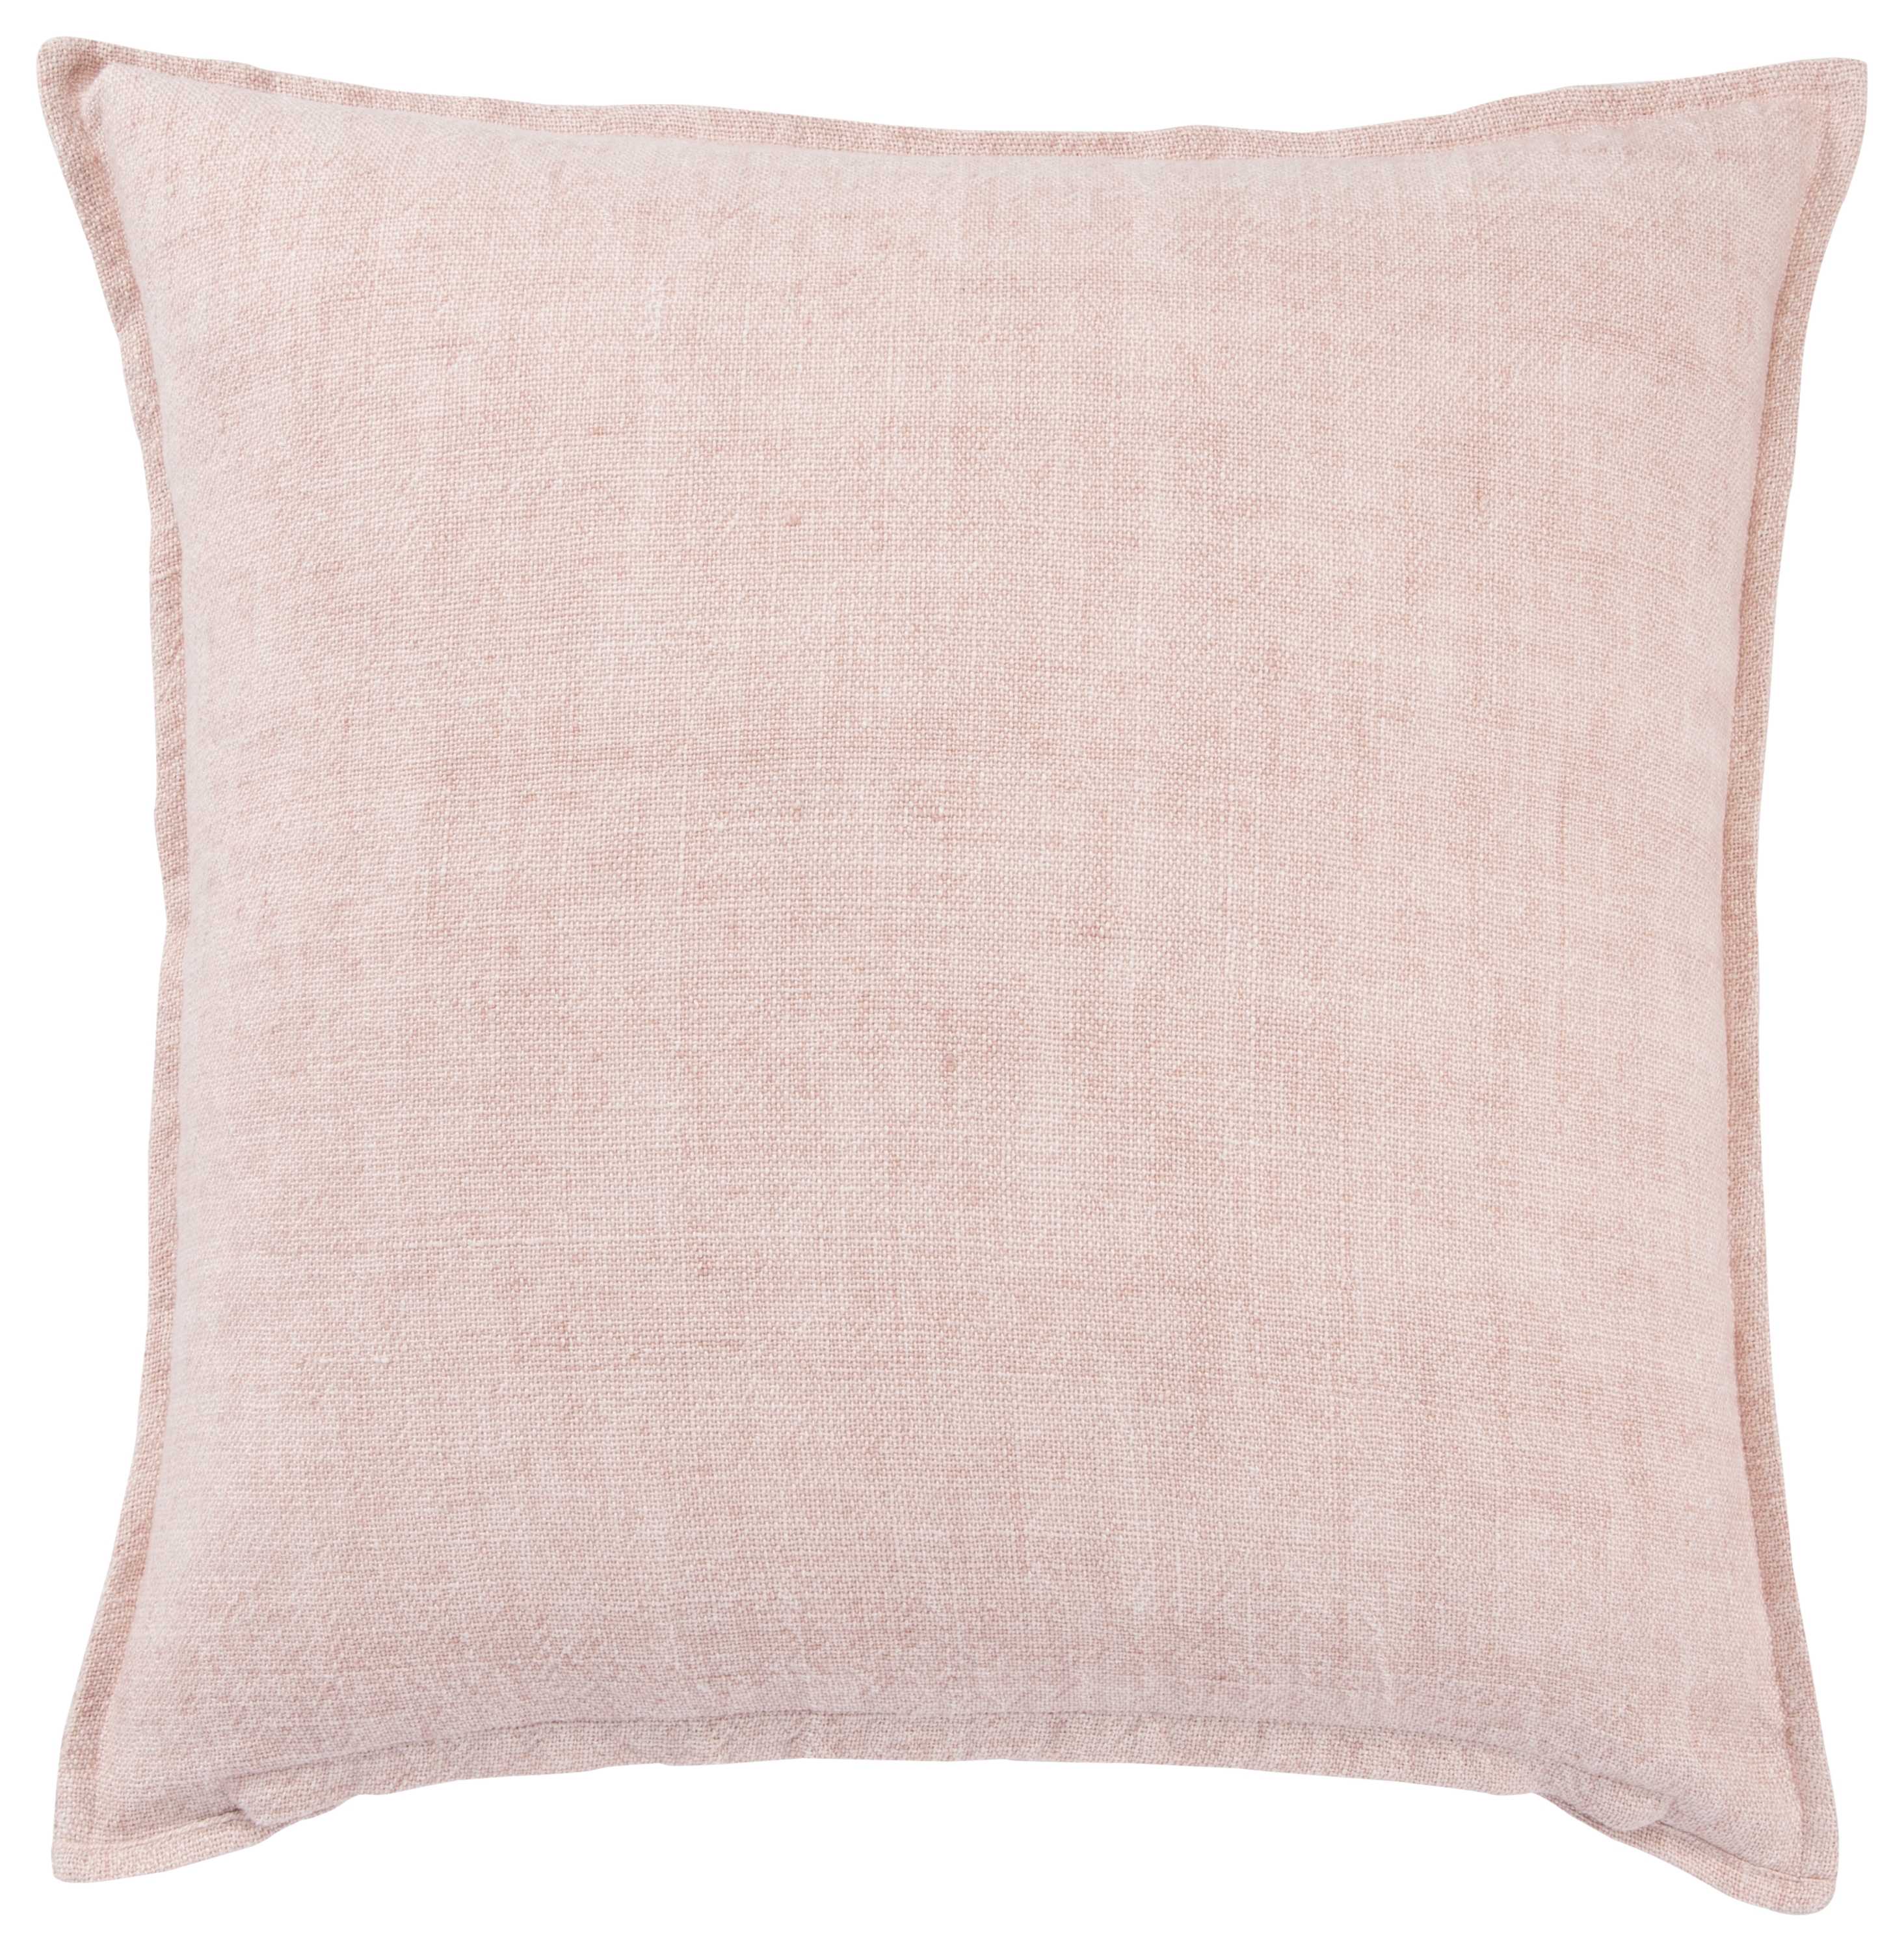 Design (US) Light Pink 22"X22" Pillow - Image 1